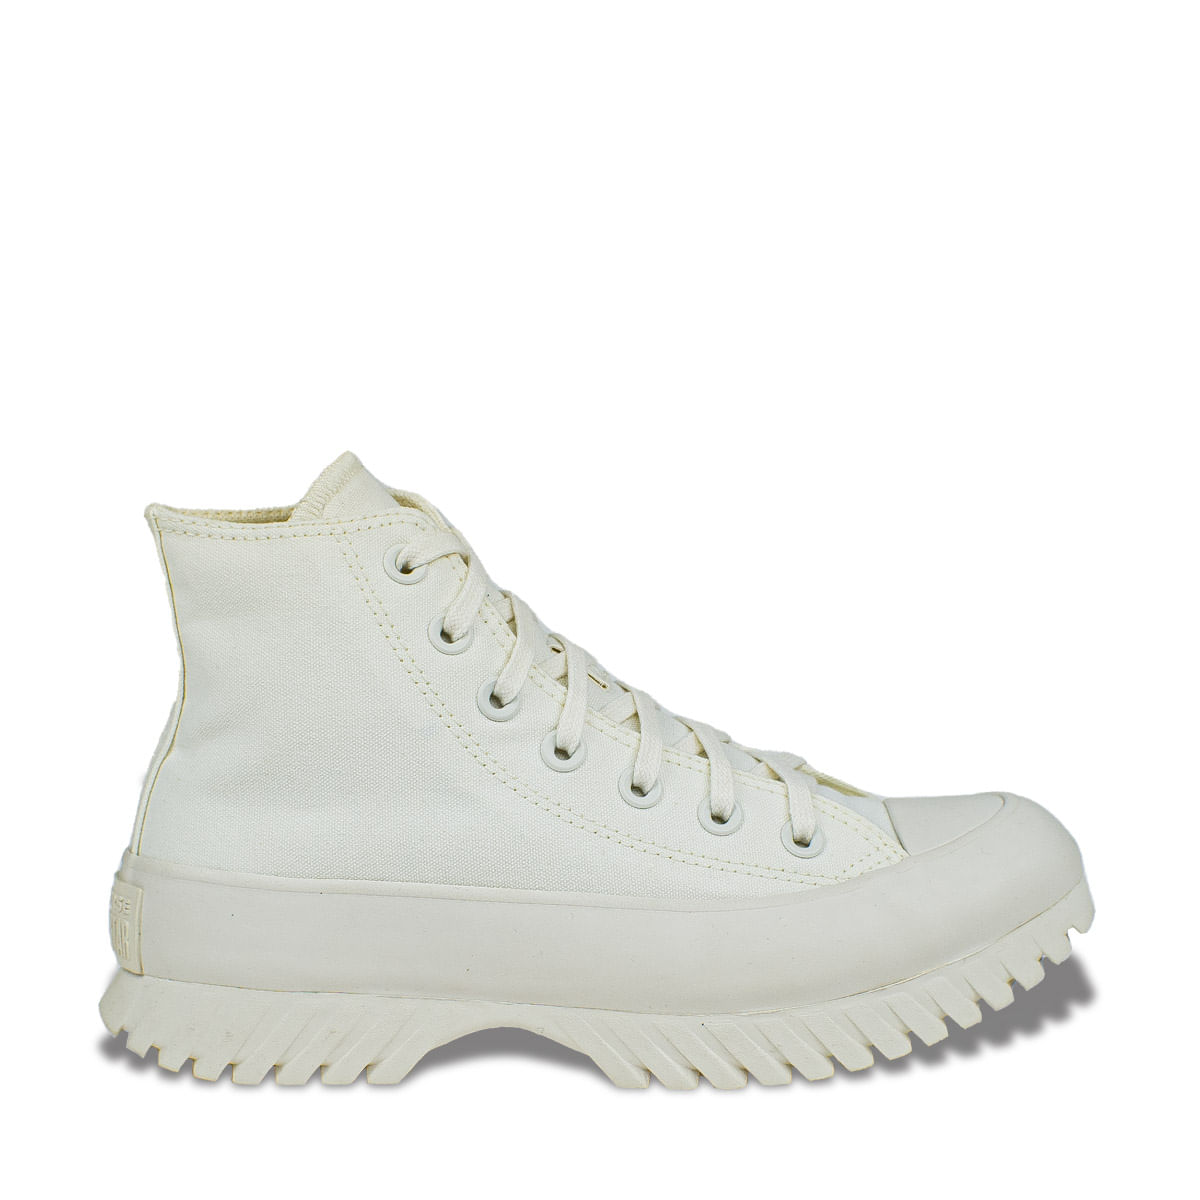 All Star Branco Cano Alto Feminino e Masculino - Kepucce Shoes